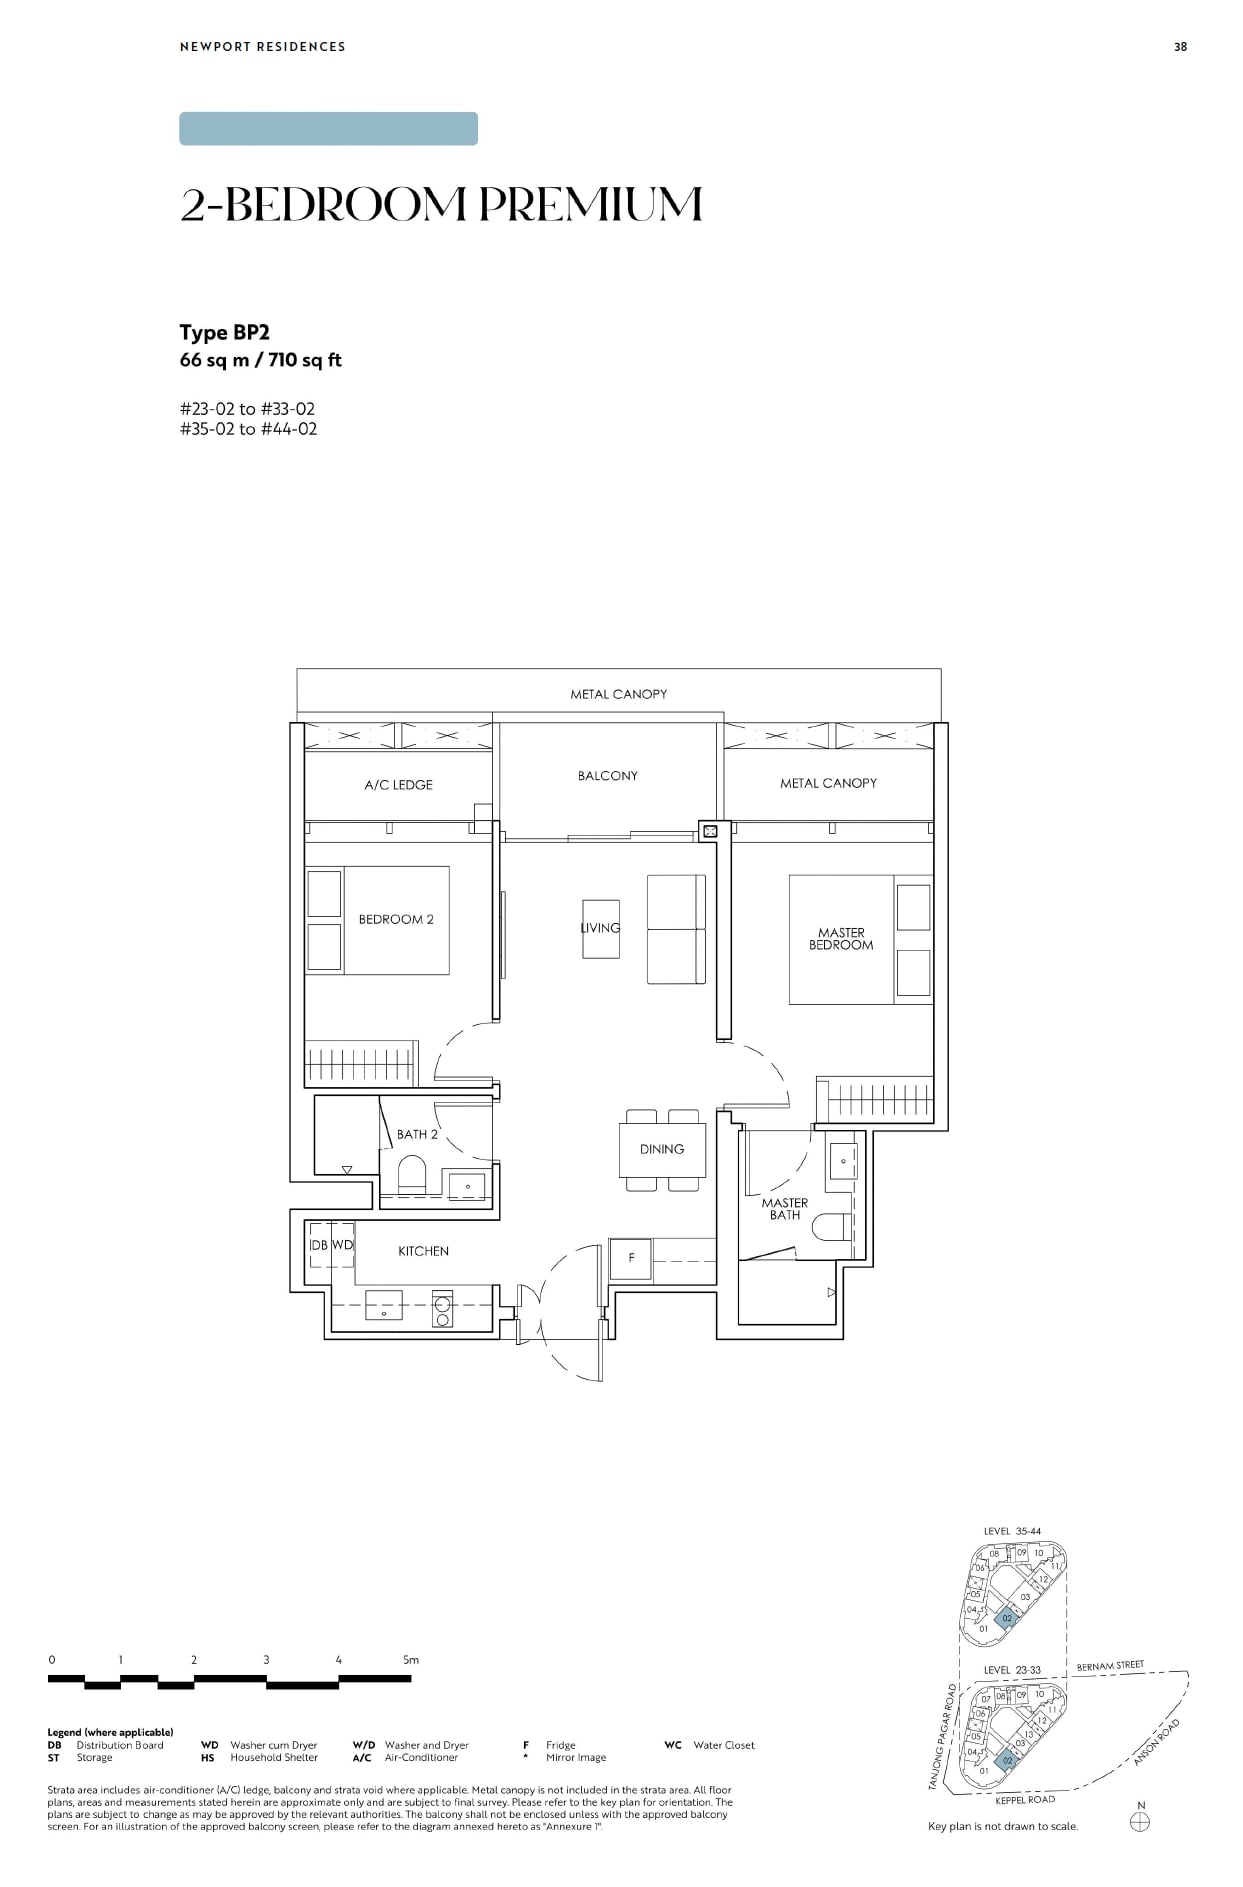 fp-newport-residences-bp2-floor-plan.jpg